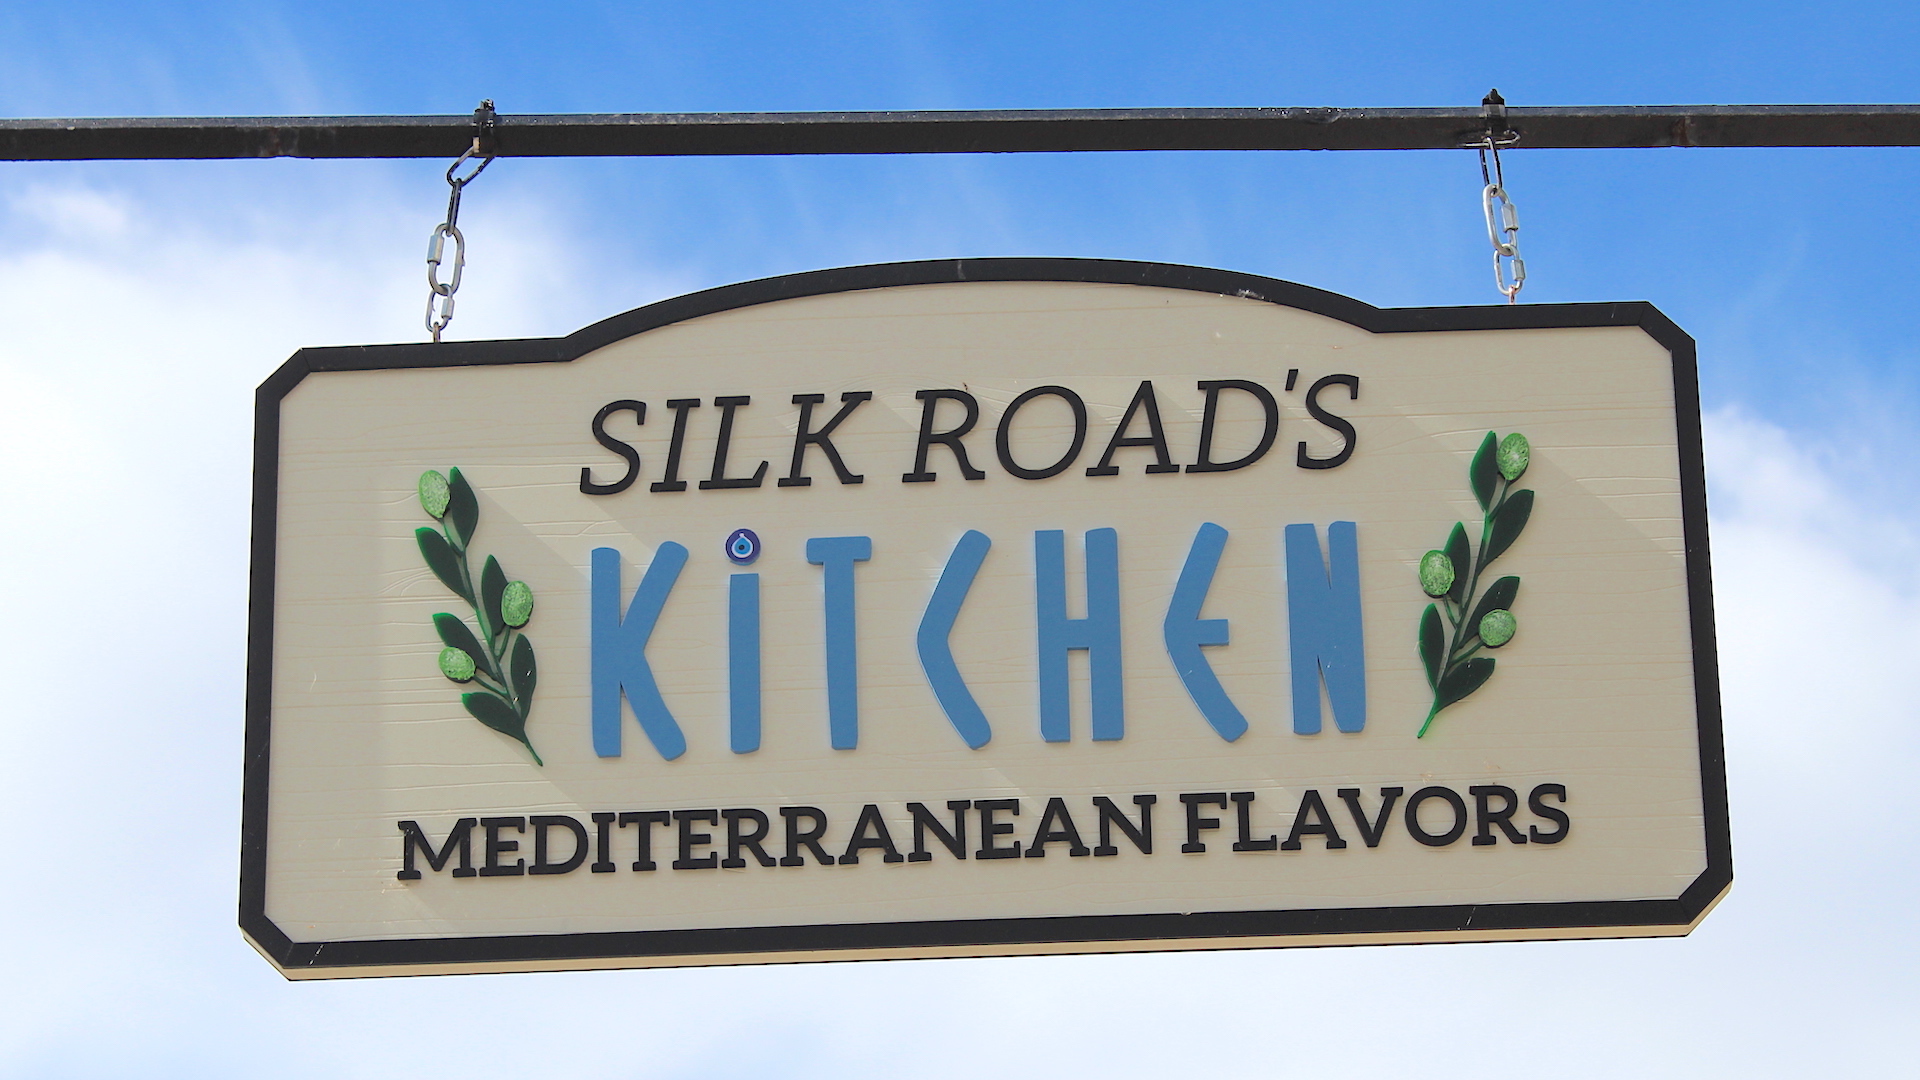 Silk Roads Kitchen - Mediterranean Flavors